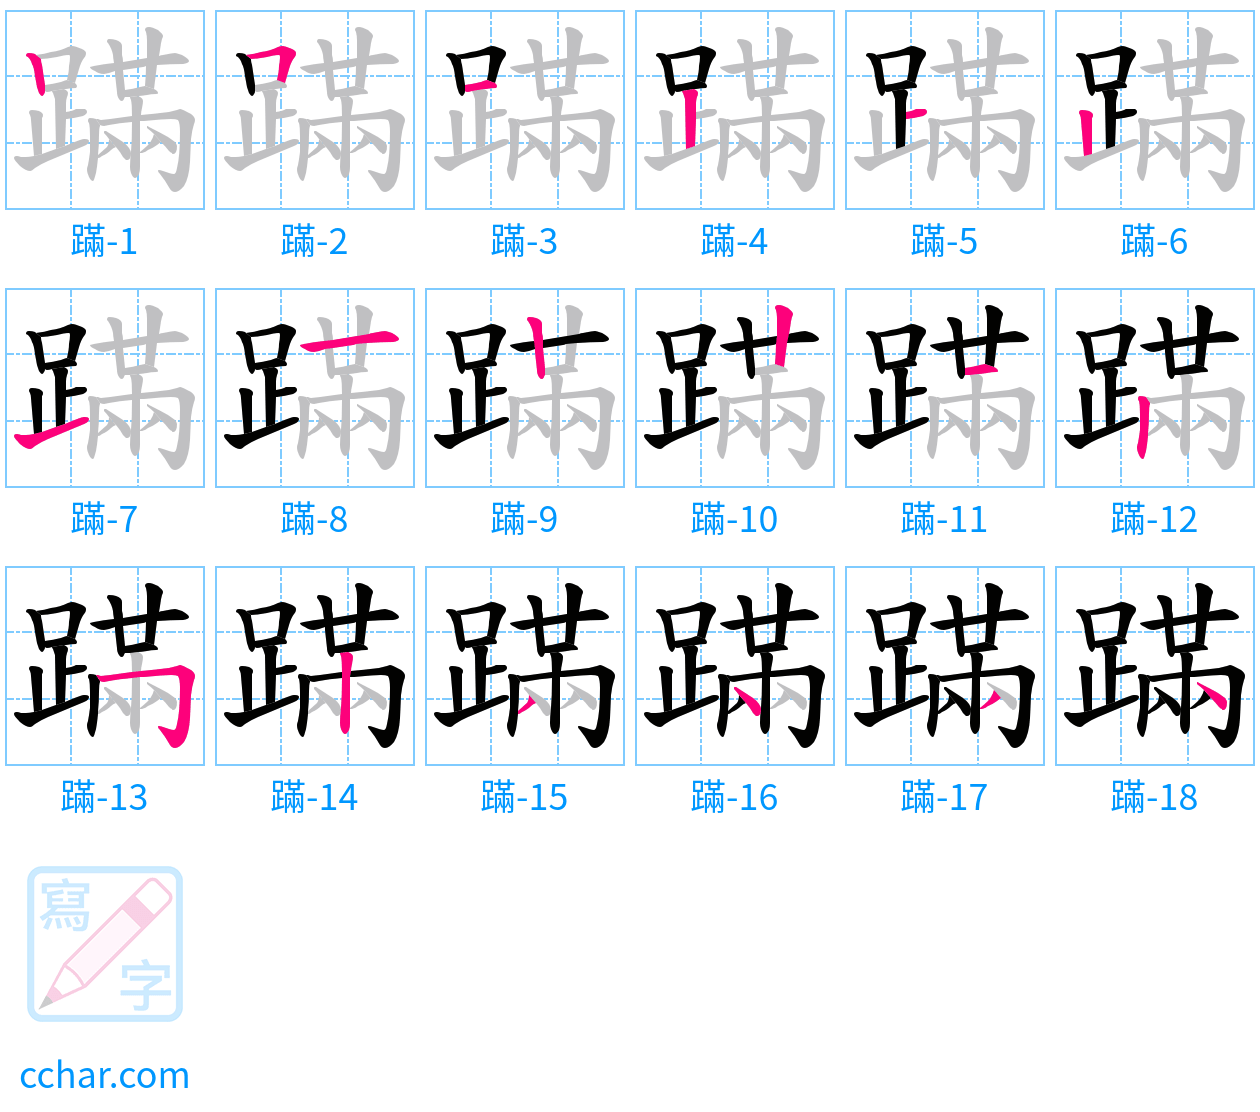 蹣 stroke order step-by-step diagram